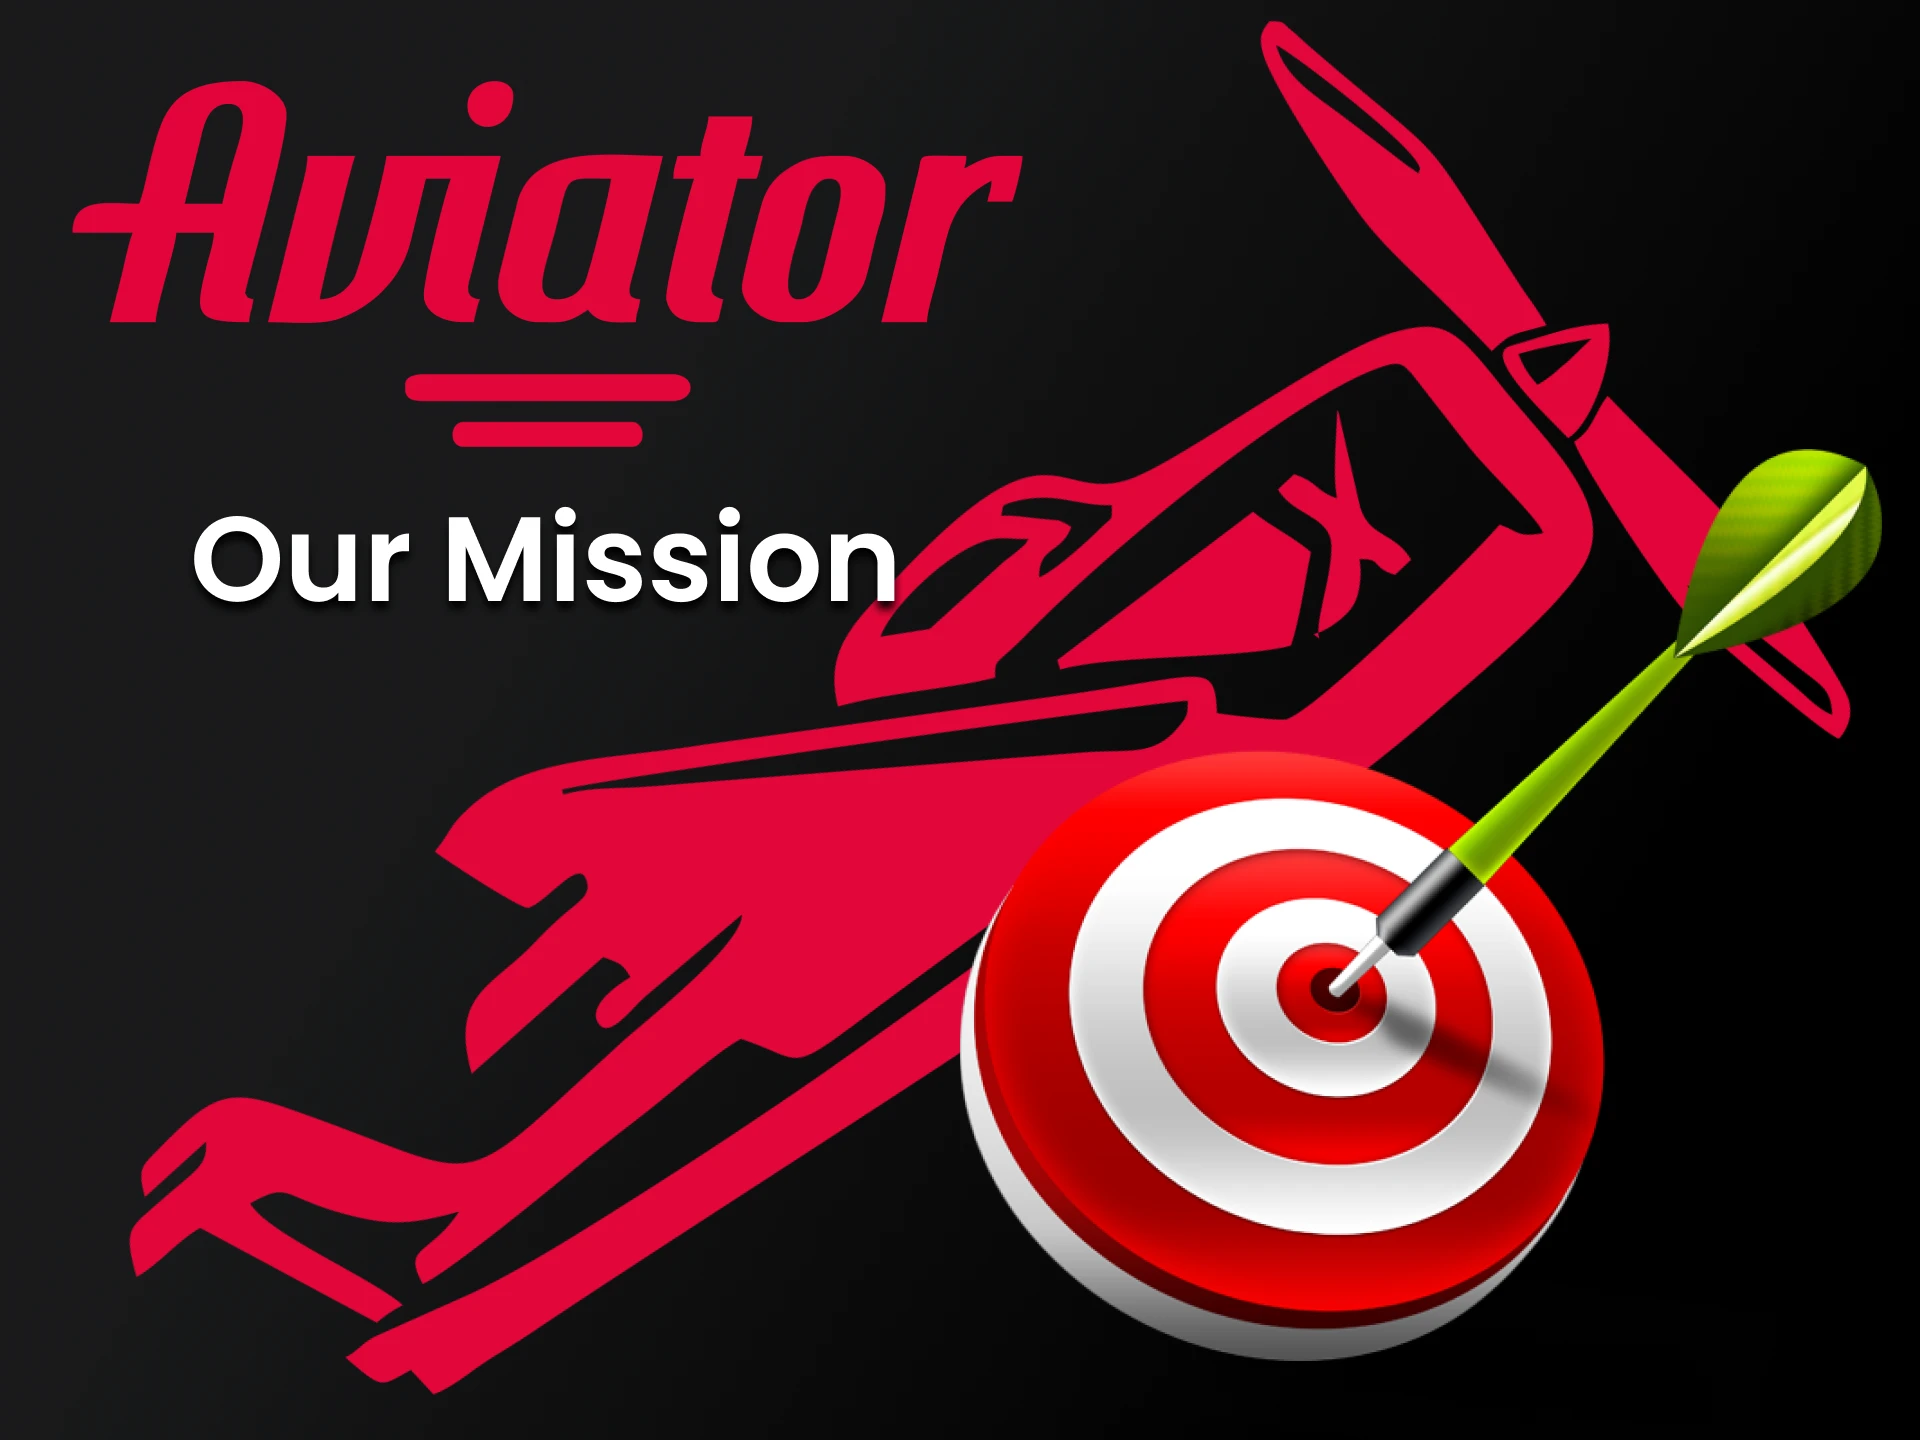 Obtenha novas informações sobre a equipe Aviator nesta página.